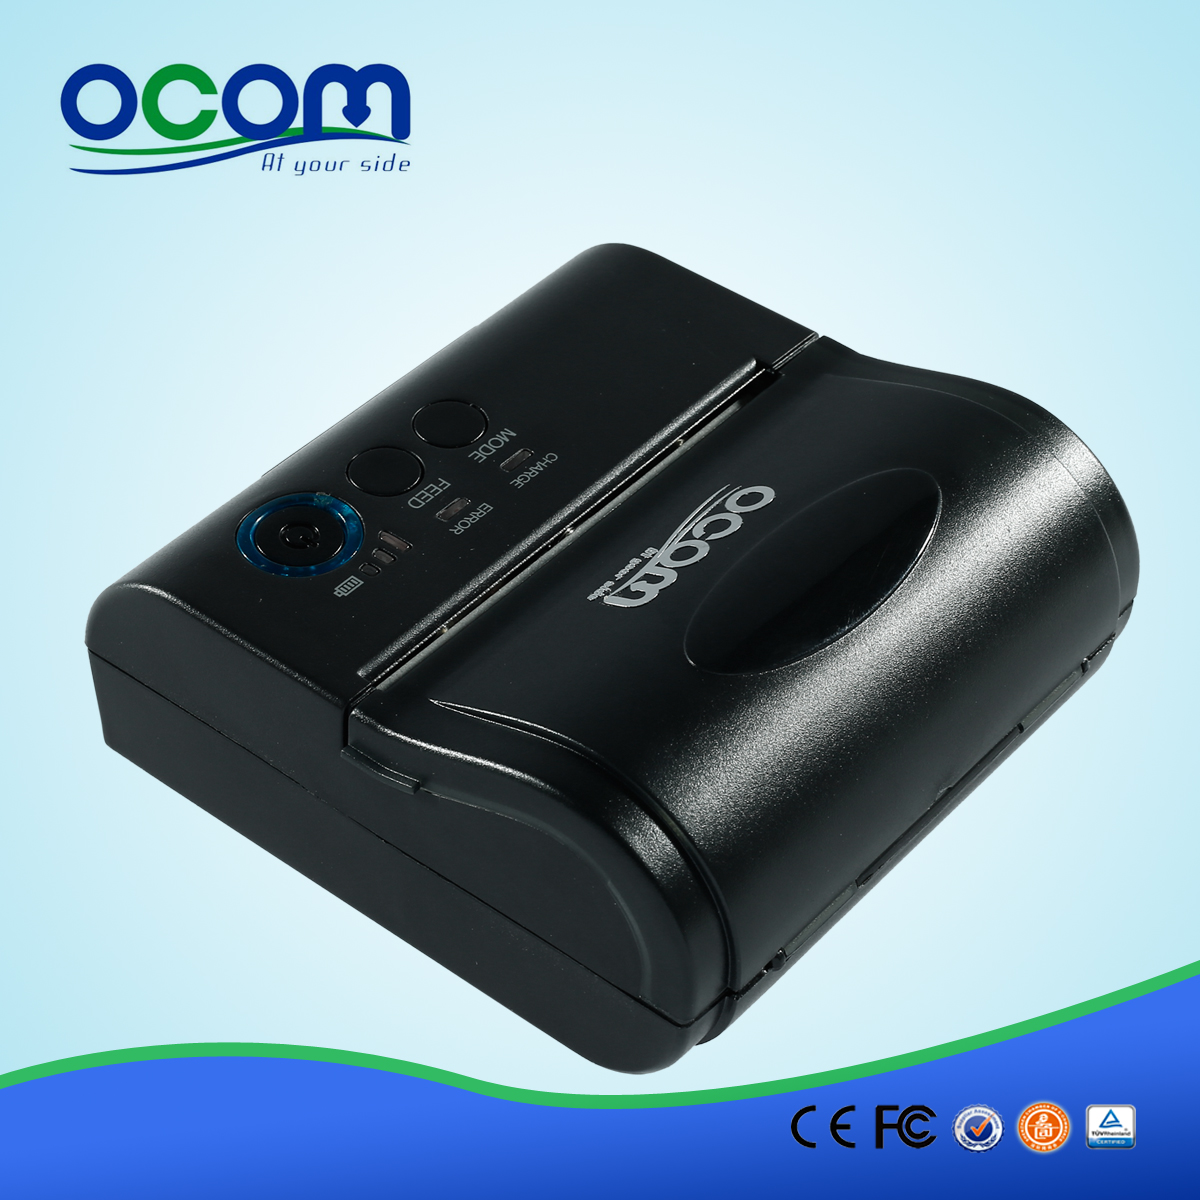 ¡Caliente! OCPP-M082 mini impresora Bluetooth portátil más barata con adaptador